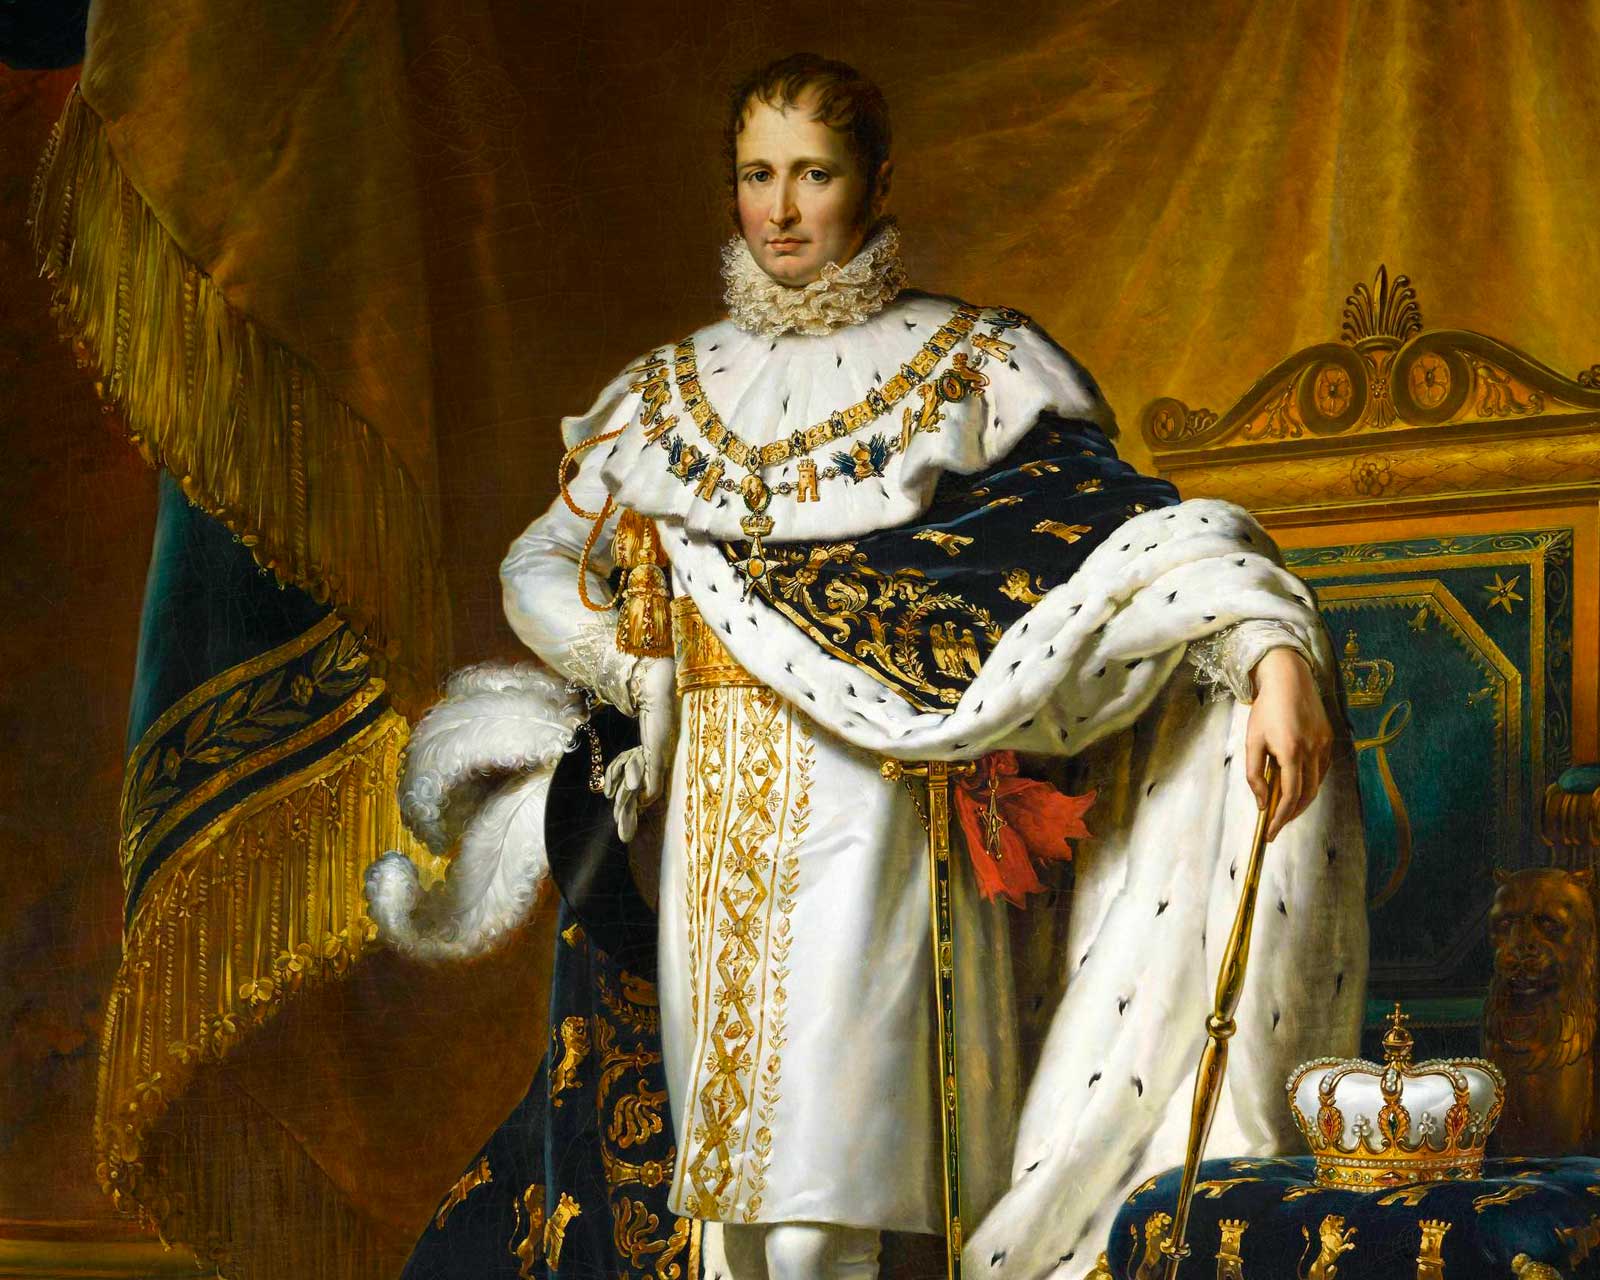 Парадный портрет короля Испании Хосе I Бонапарте, 1800-е. Франсуа Жерар.